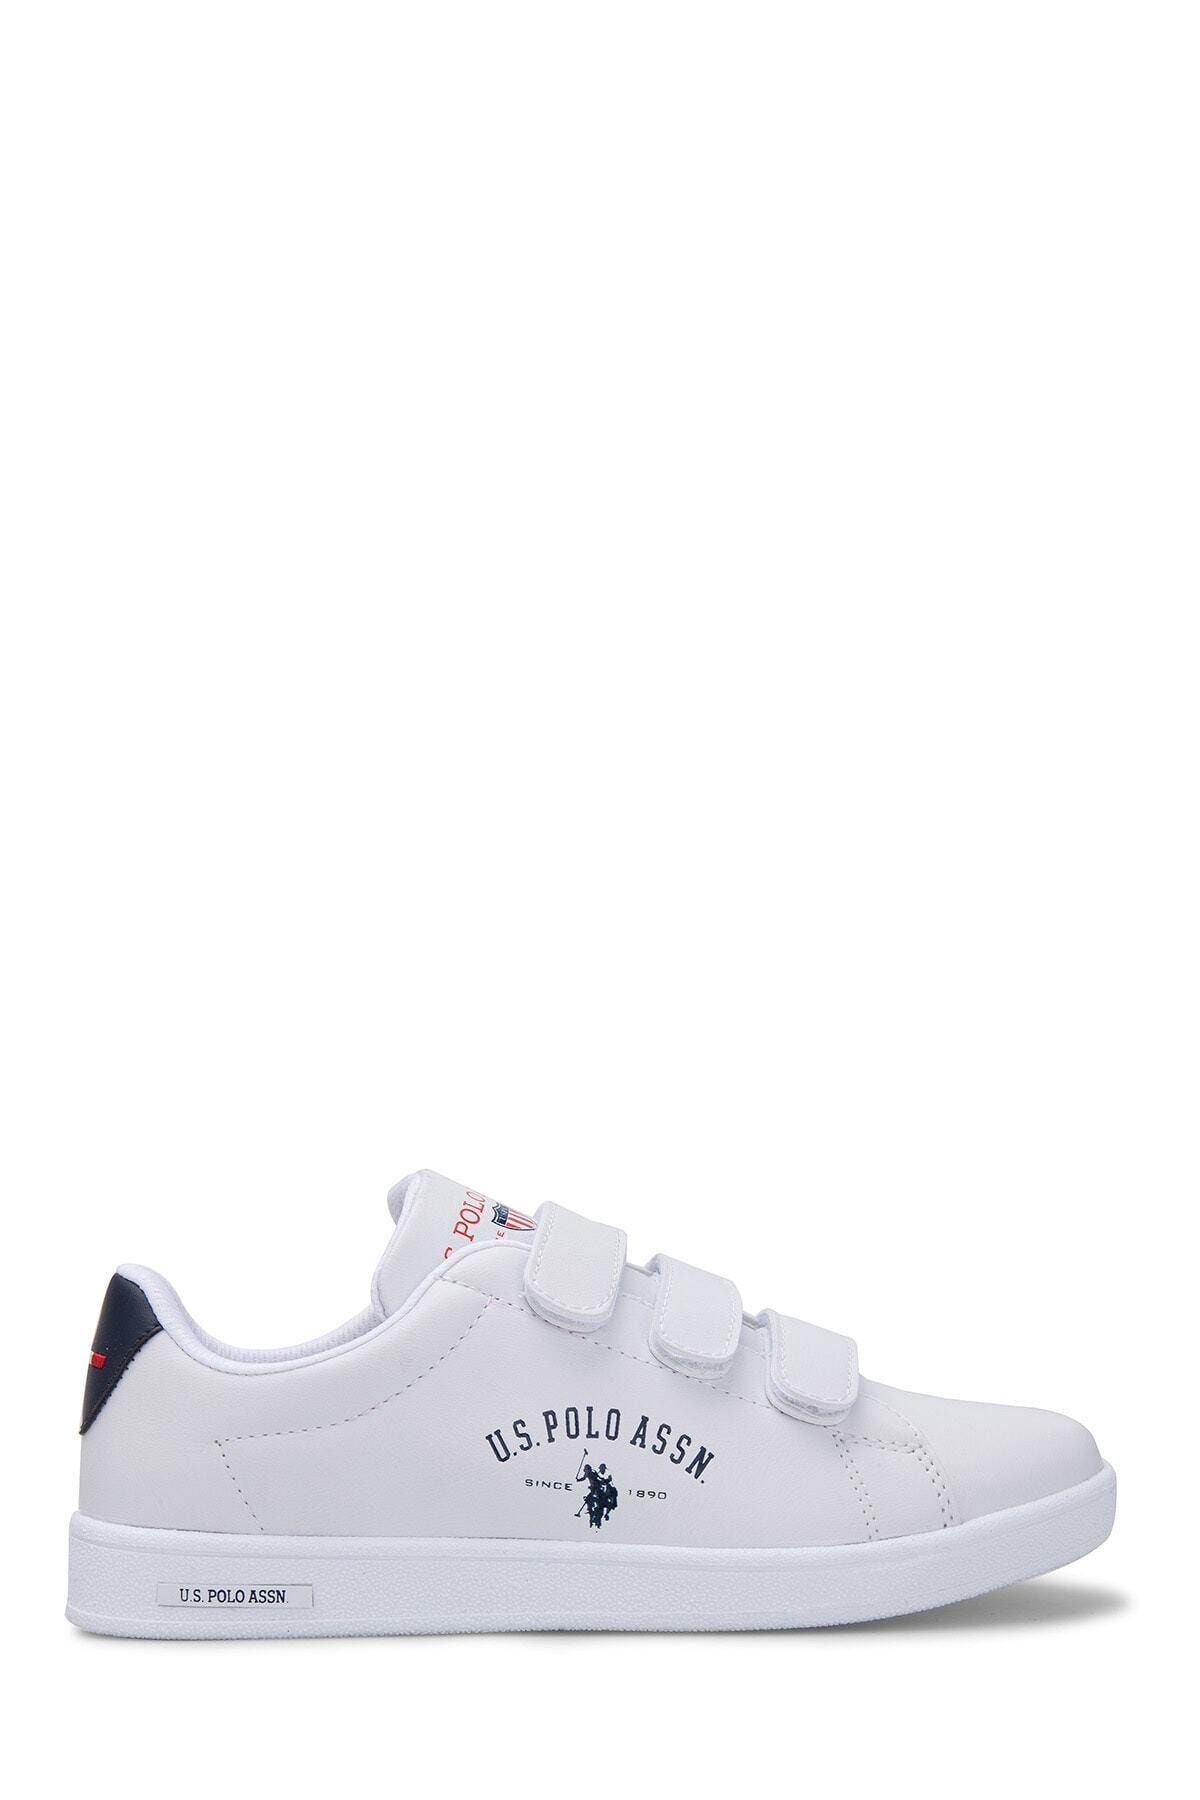 U.S. Polo Assn. Beyaz Kadın Sneaker